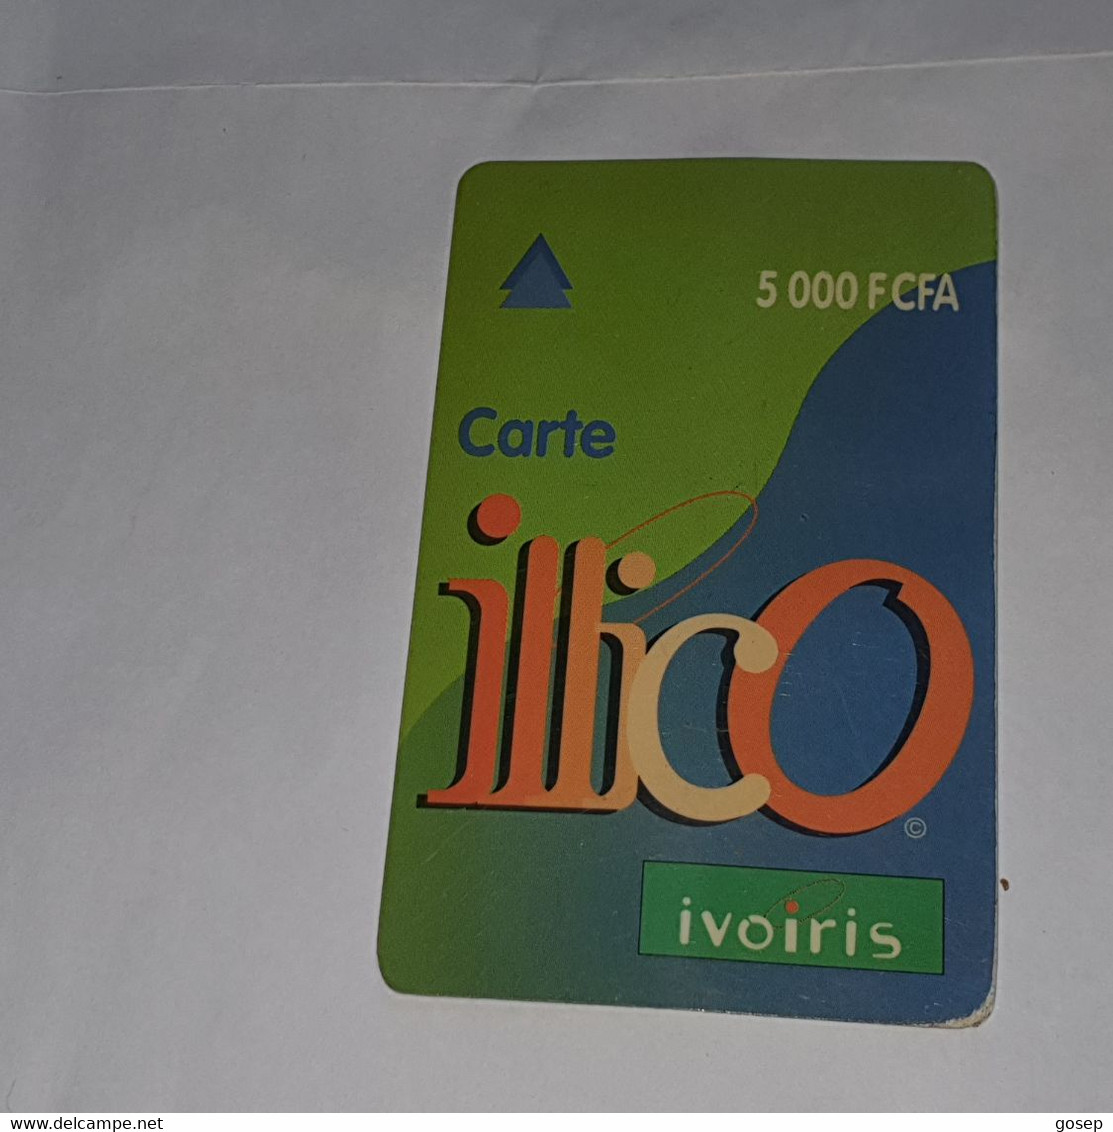 Ivory Coast-(CI-ILL-REF-0004B/2)-carte Lllico(10)-(5.000fcfa)-(96-08-44-89-85-23-00)-used Card+1card Prepiad Free - Ivory Coast